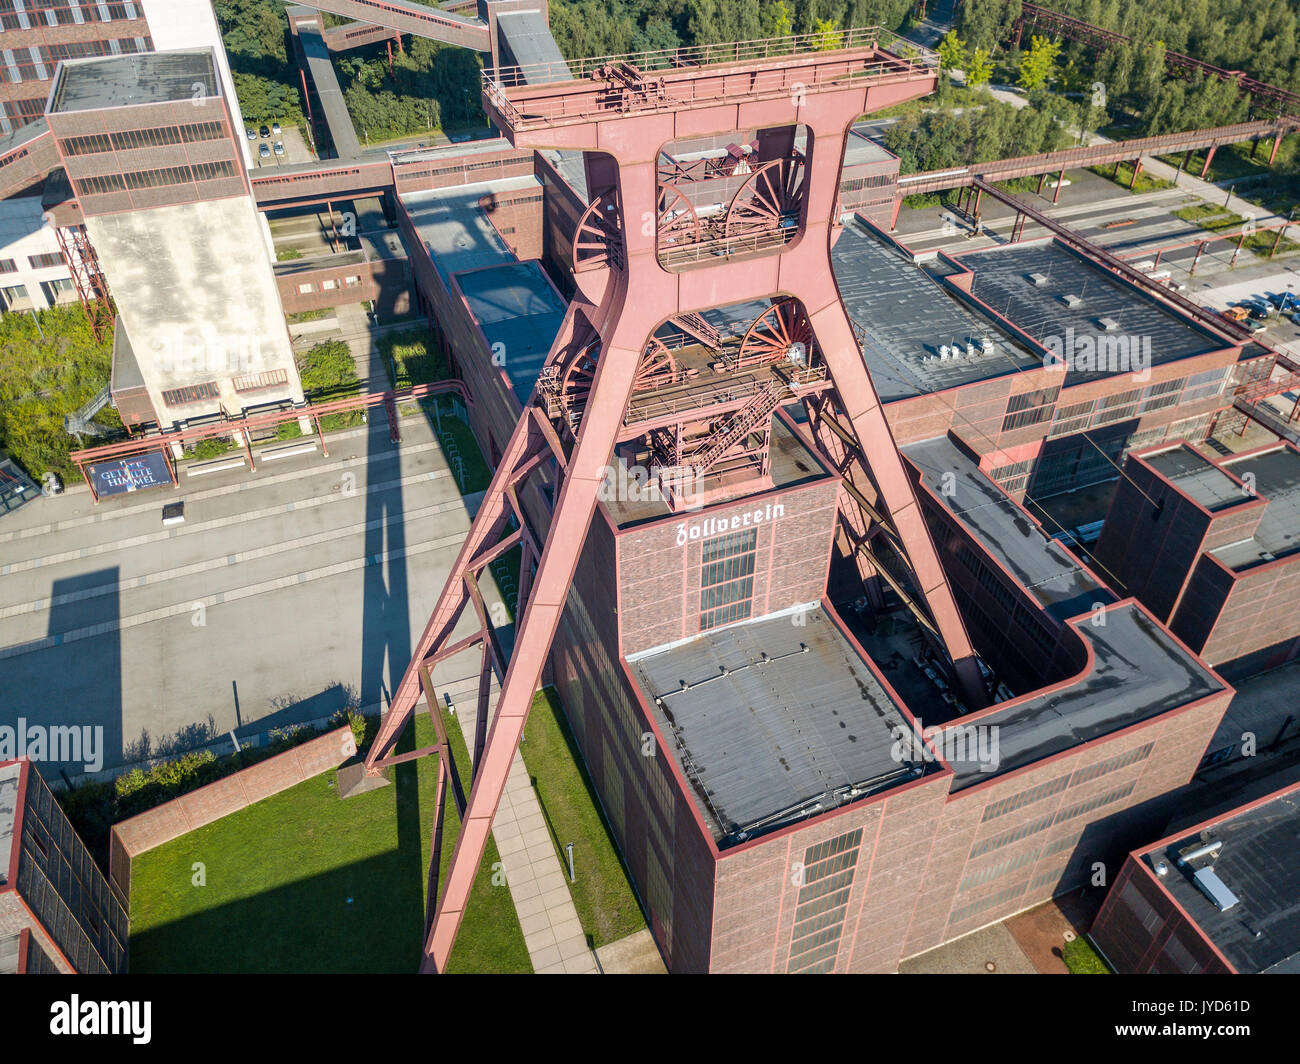 Zeche Zollverein, Weltkulturerbe der Unesco, in Essen, Deutschland, ehemalige Weltweit größte Coal Mine, heute ein kulturelles Wahrzeichen im Ruhrgebiet, windi Stockfoto